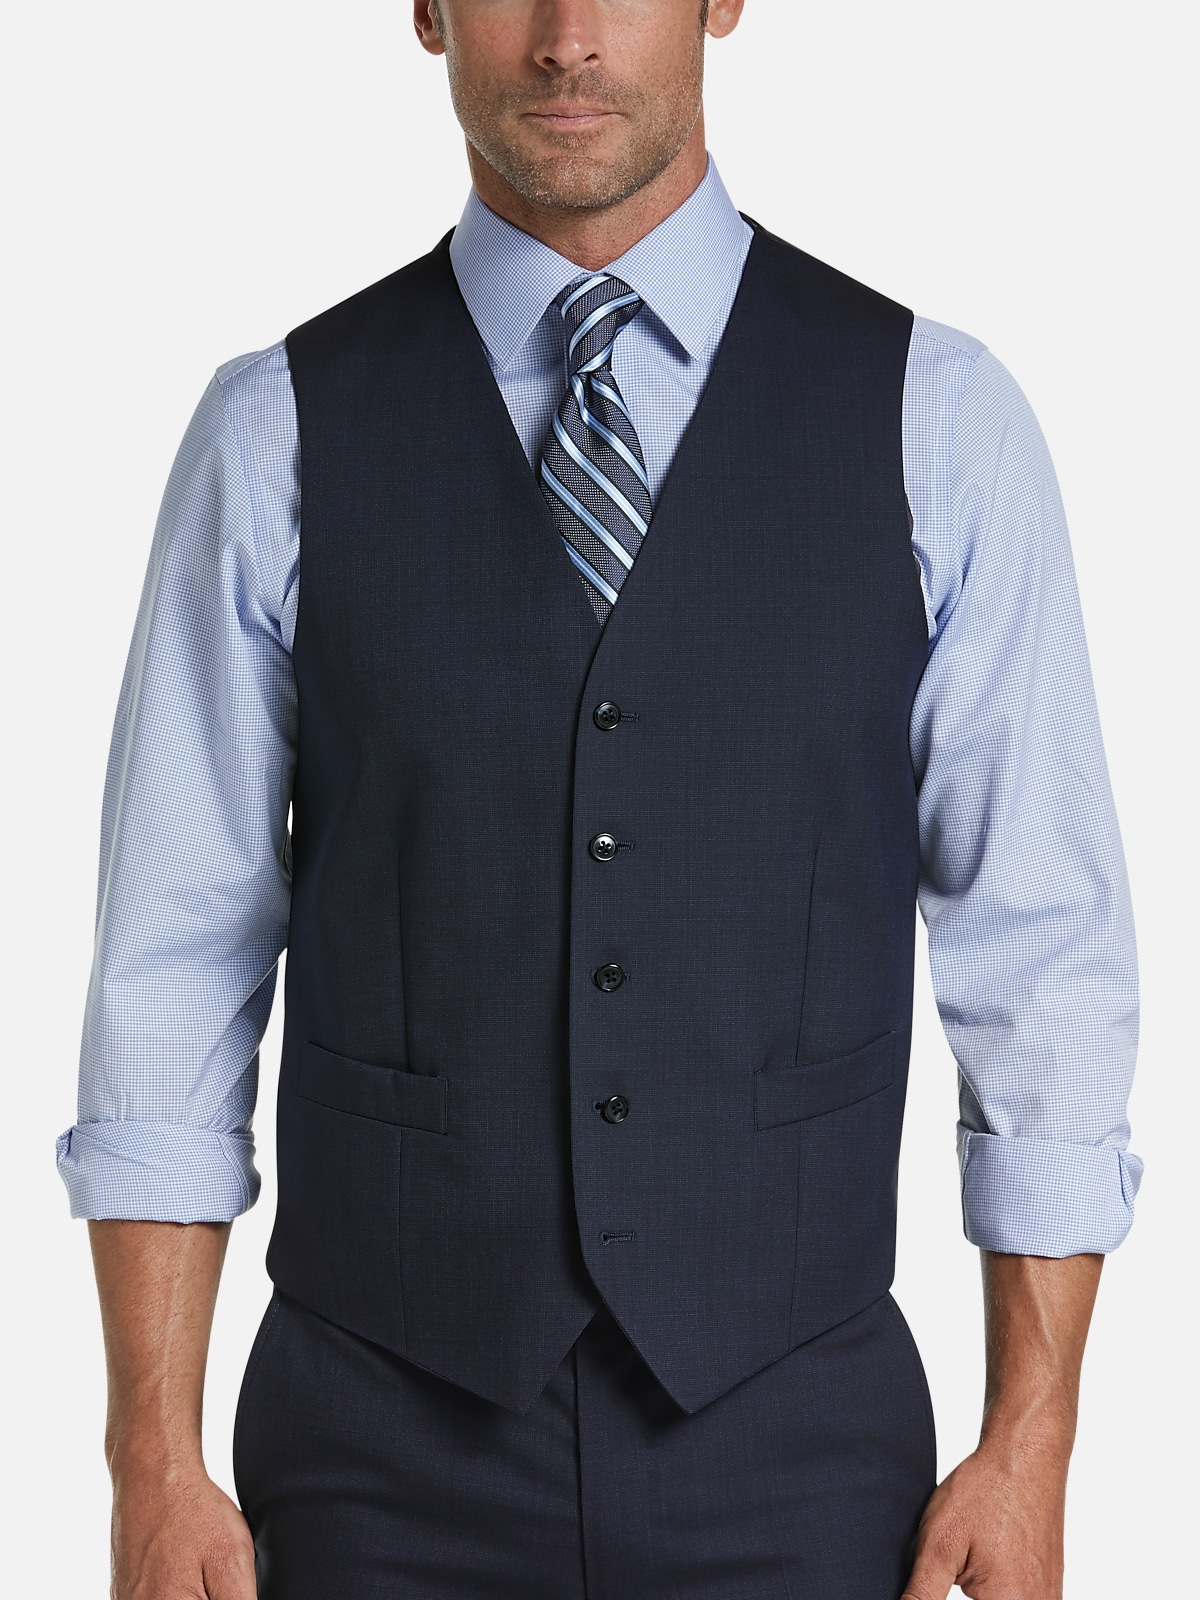 Joseph Abboud Modern Fit Suit Separates Vest | All Clearance $39.99 ...